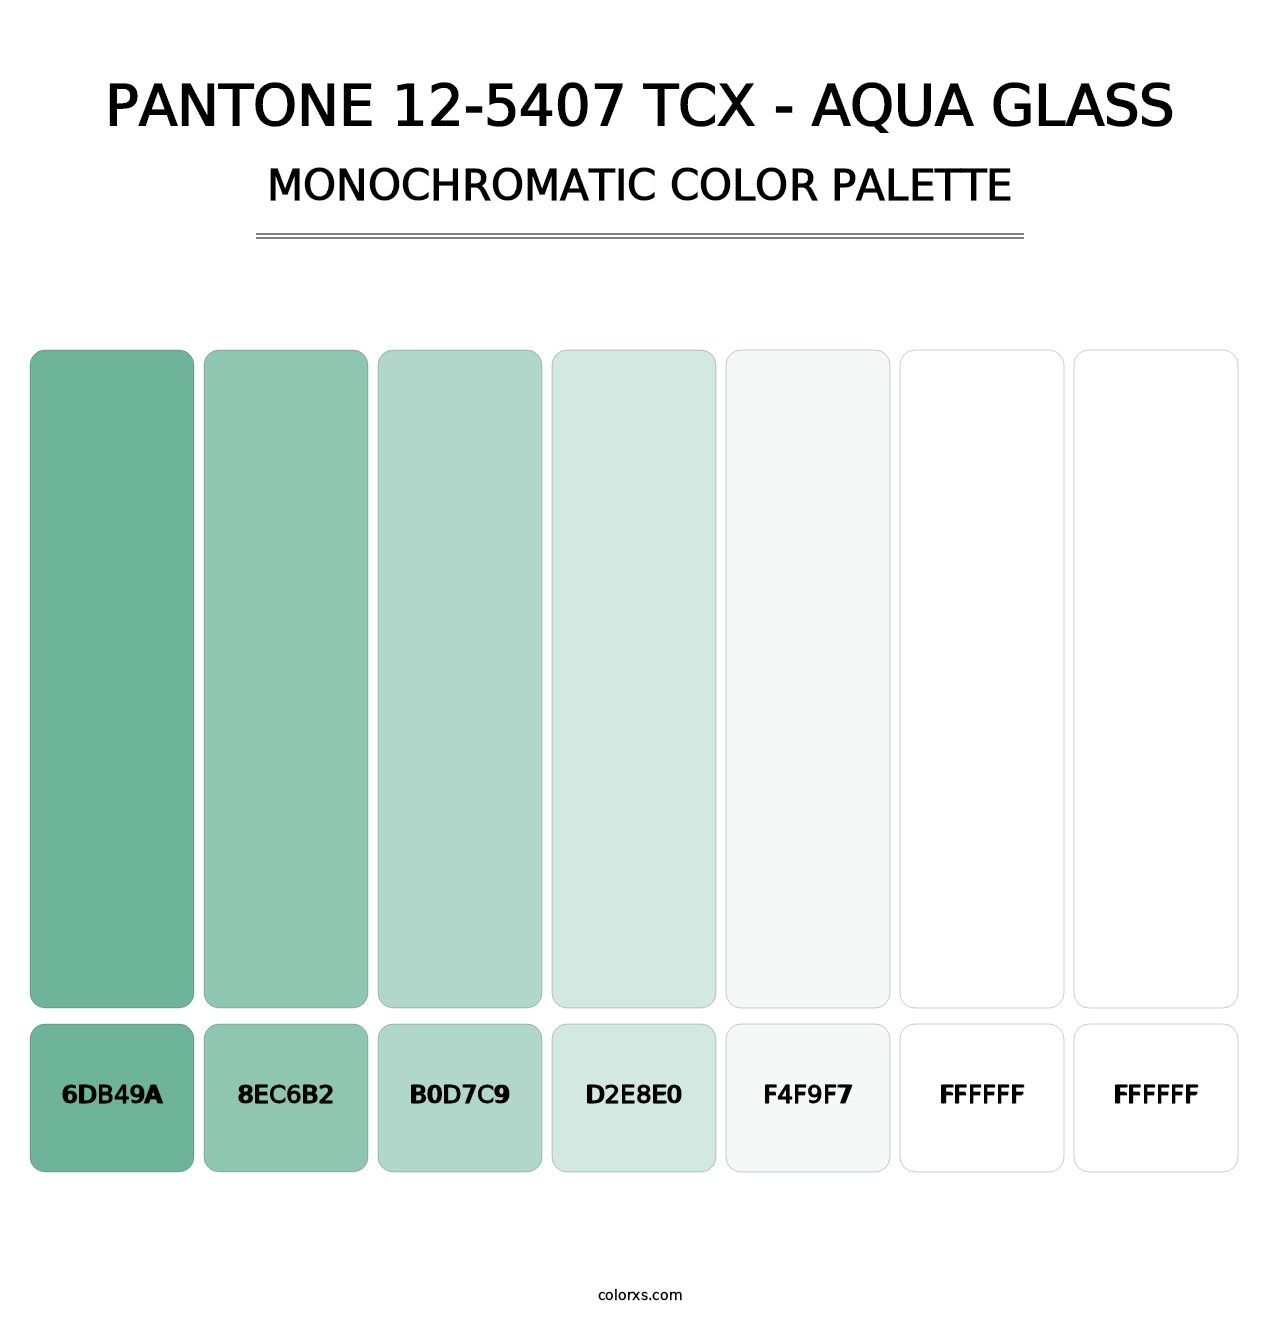 PANTONE 12-5407 TCX - Aqua Glass - Monochromatic Color Palette